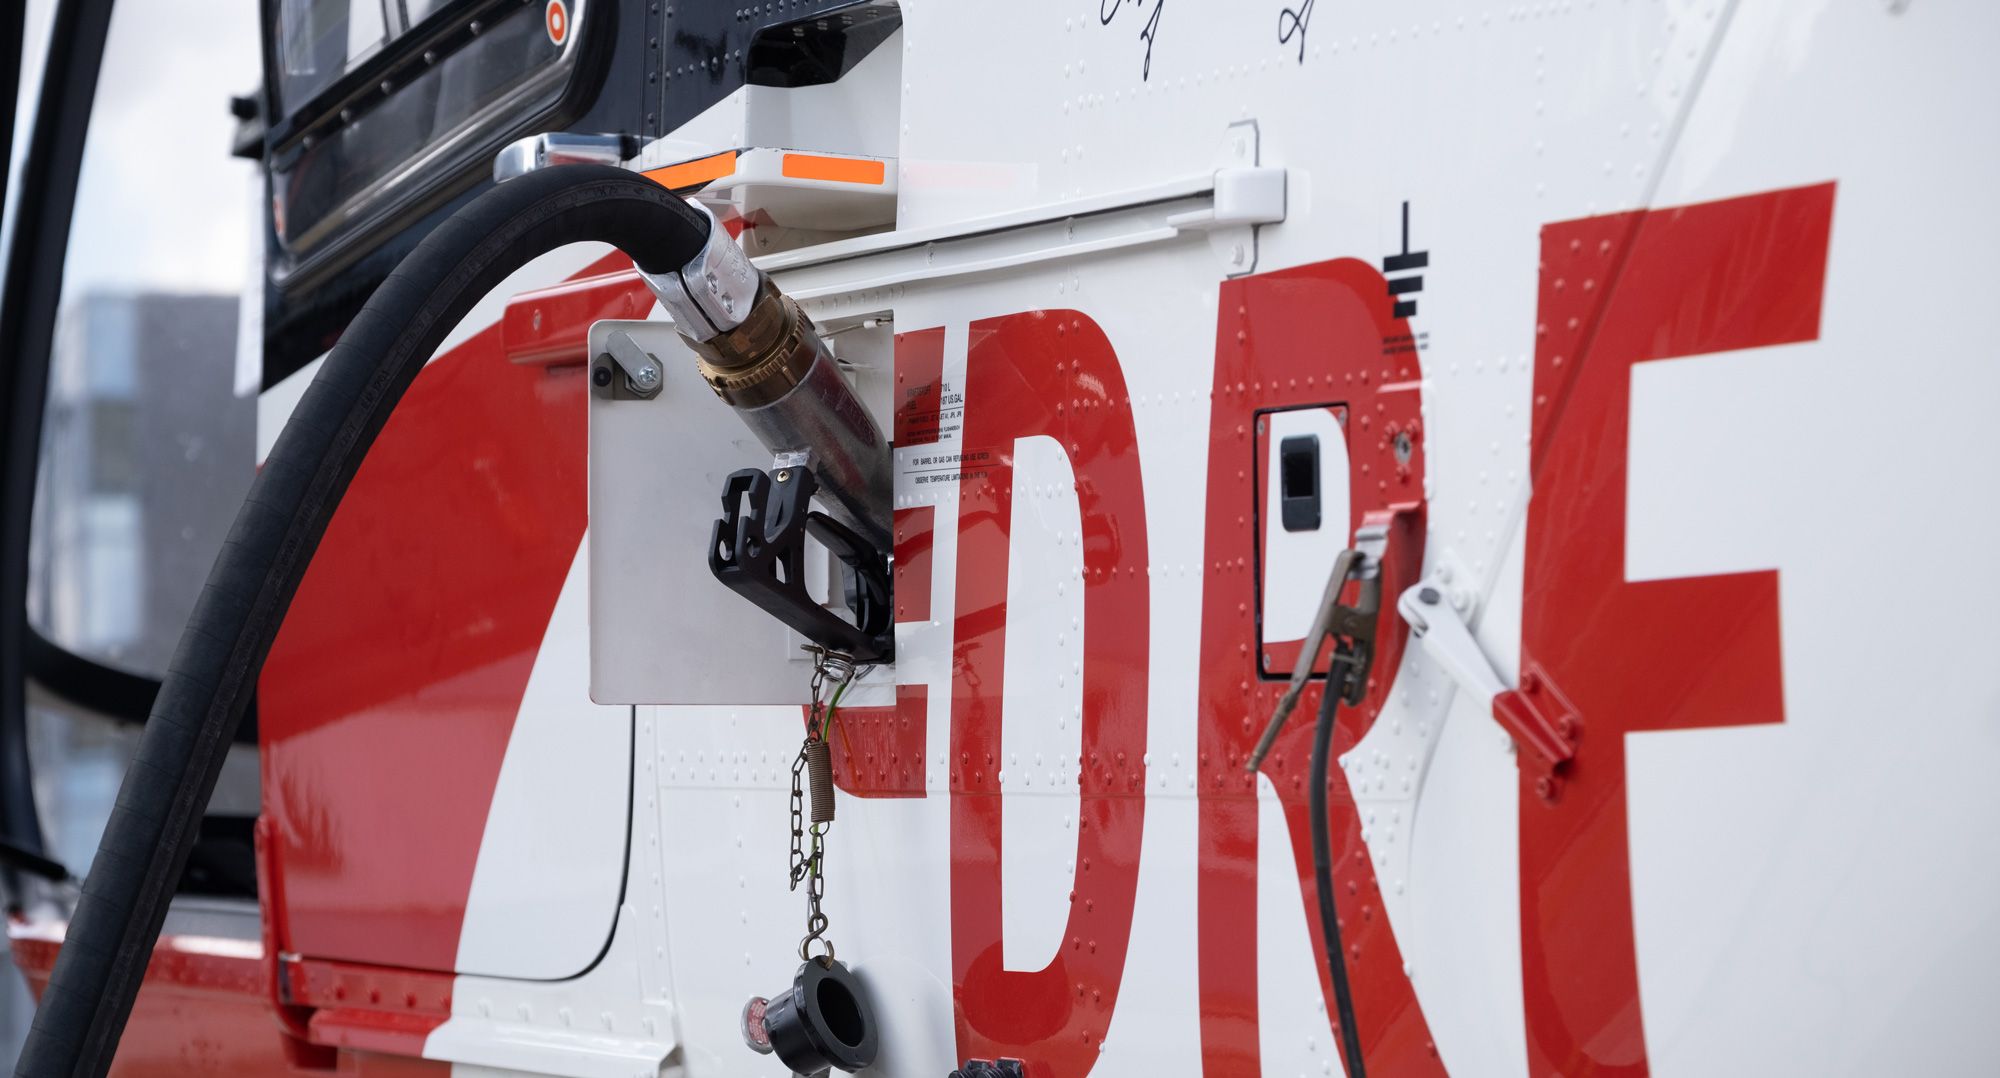 Seit heute fliegt der rot-weiße Magdeburger Hubschrauber der DRF Luftrettung mit dem umweltfreundlichen Treibstoff SAF (Sustainable Aviation Fuel). In Kooperation mit dem Triebwerkshersteller Safran Helicopter Engines und Airbus Helicopters untersucht die DRF Luftrettung die Auswirkungen von SAF auf den Hubschraubertyp Airbus H135. Mit dem Pilotprojekt wollen die rot-weißen Luftretter CO2-Emissionen reduzieren und einen Beitrag zu mehr Nachhaltigkeit in der Luftfahrt leisten. 